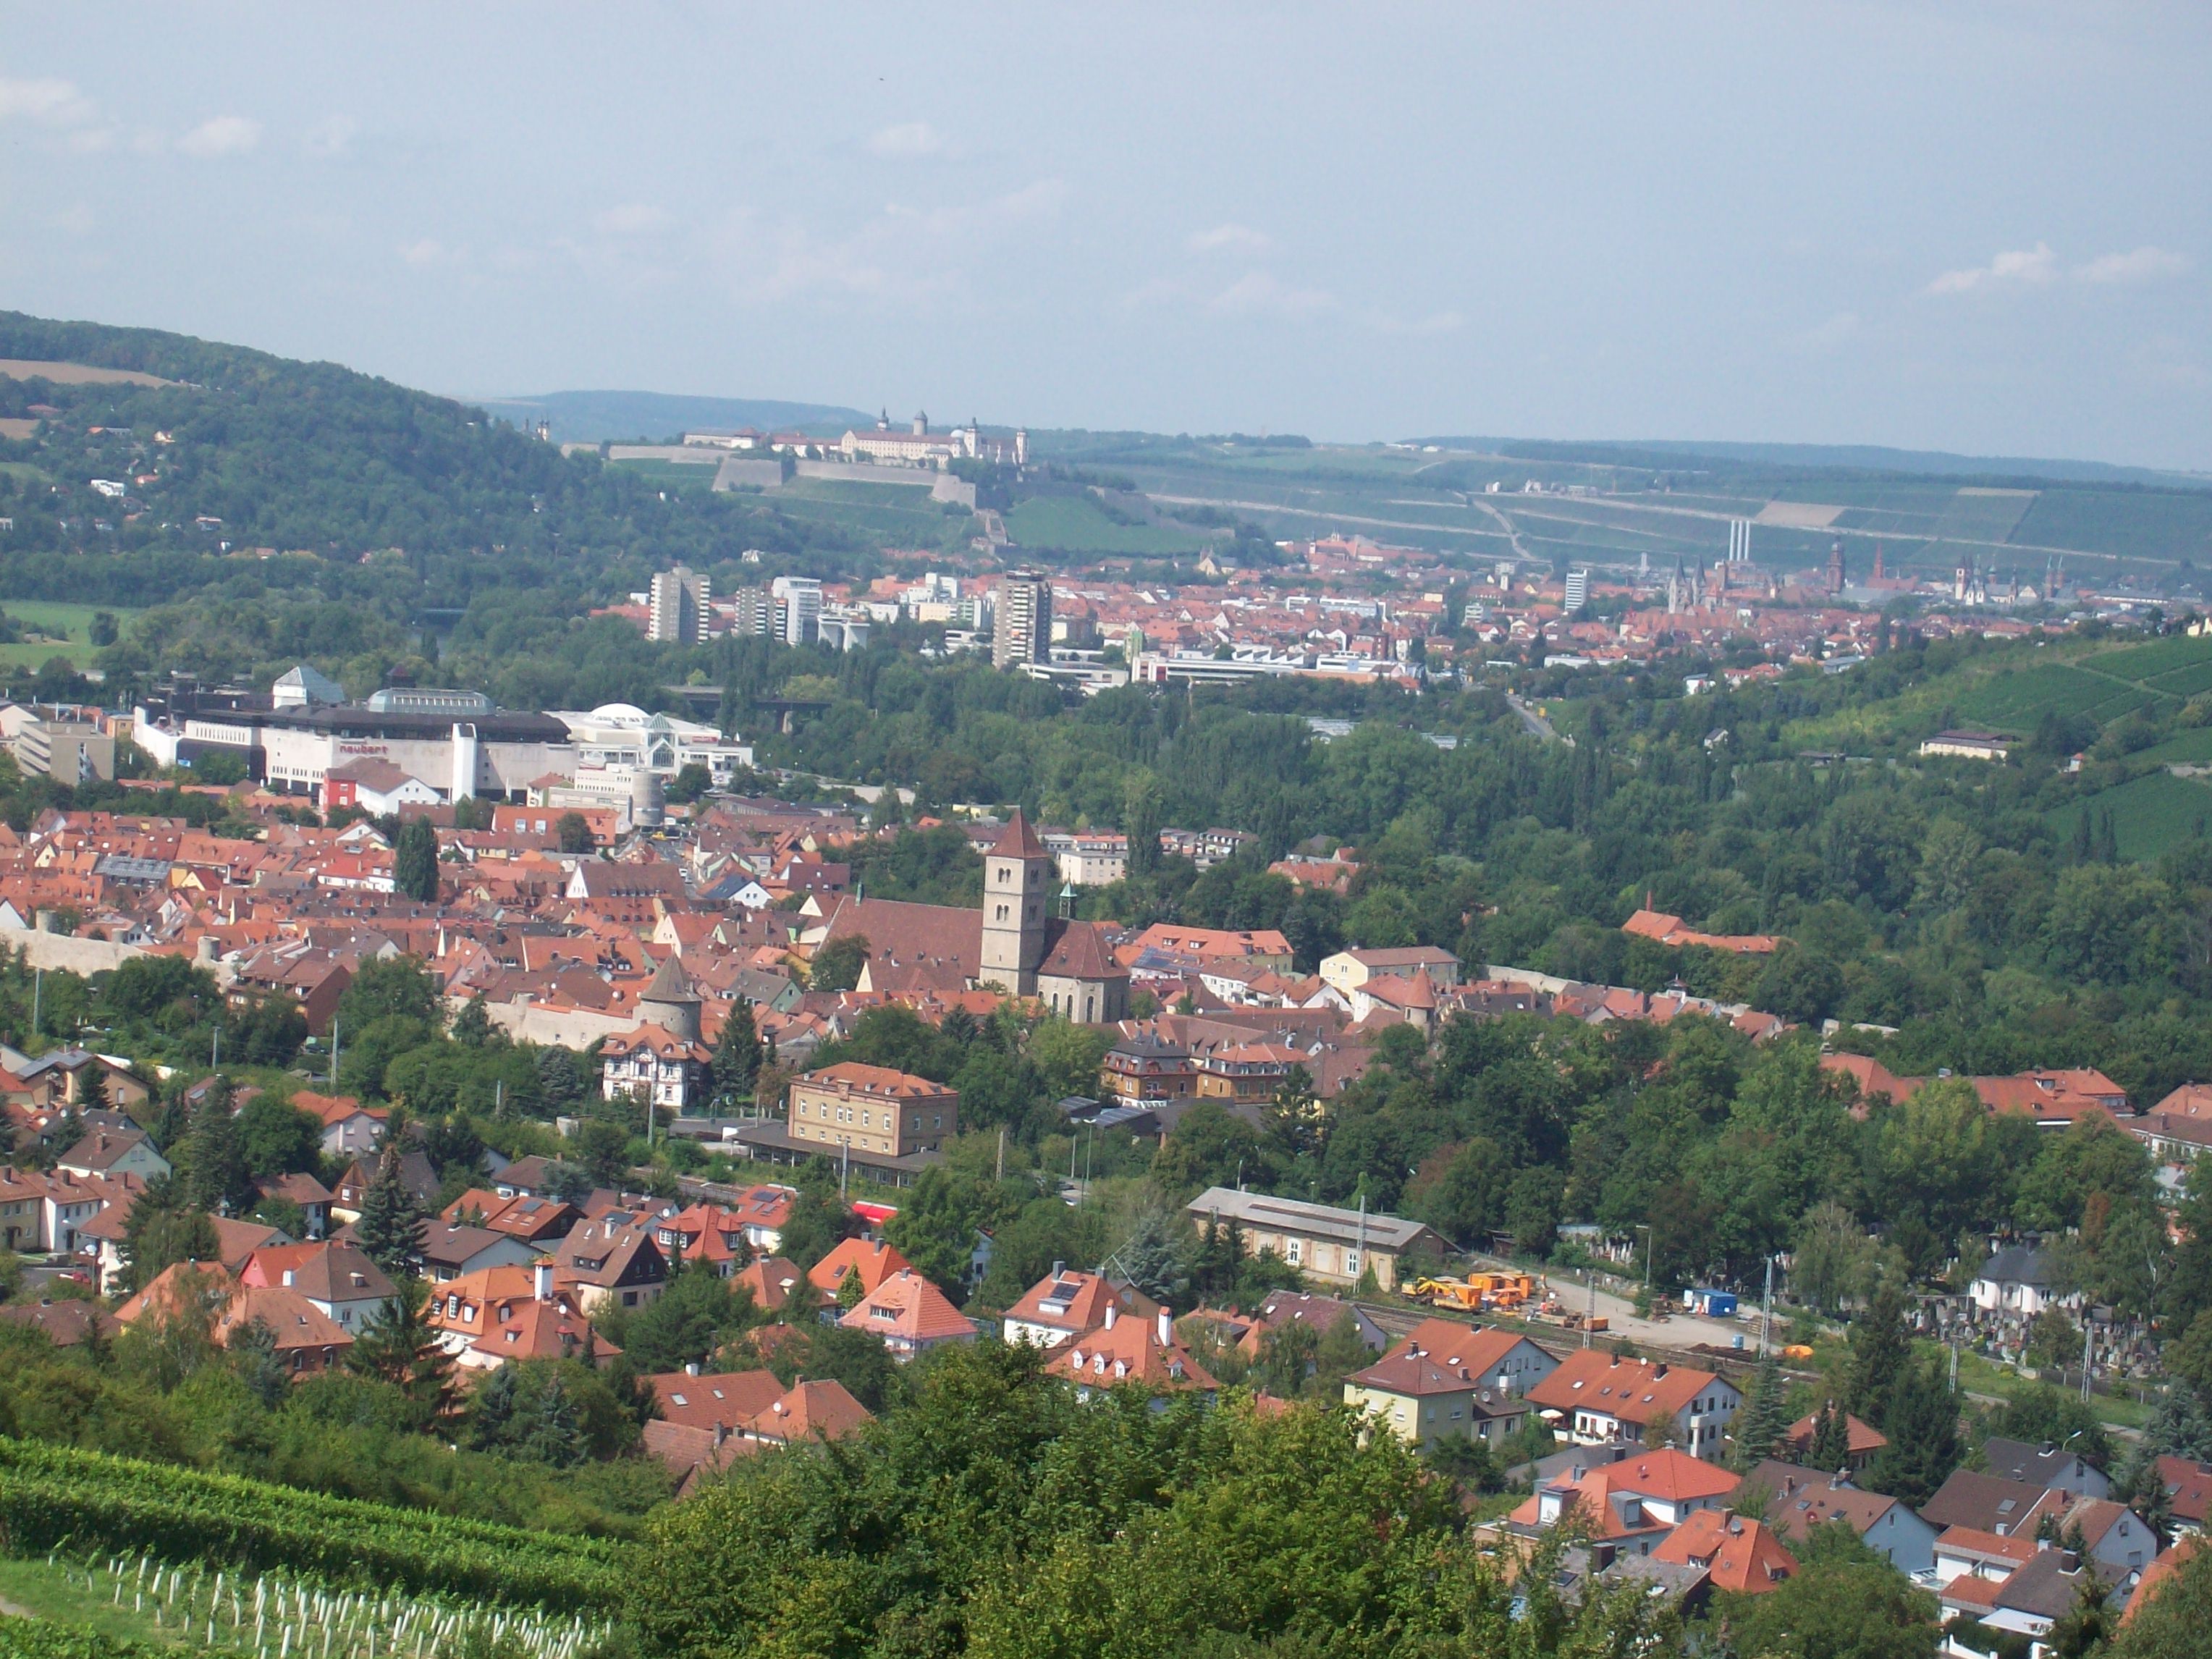 Tolle Aussicht:Im Hintergrund das Würzburger Schloss